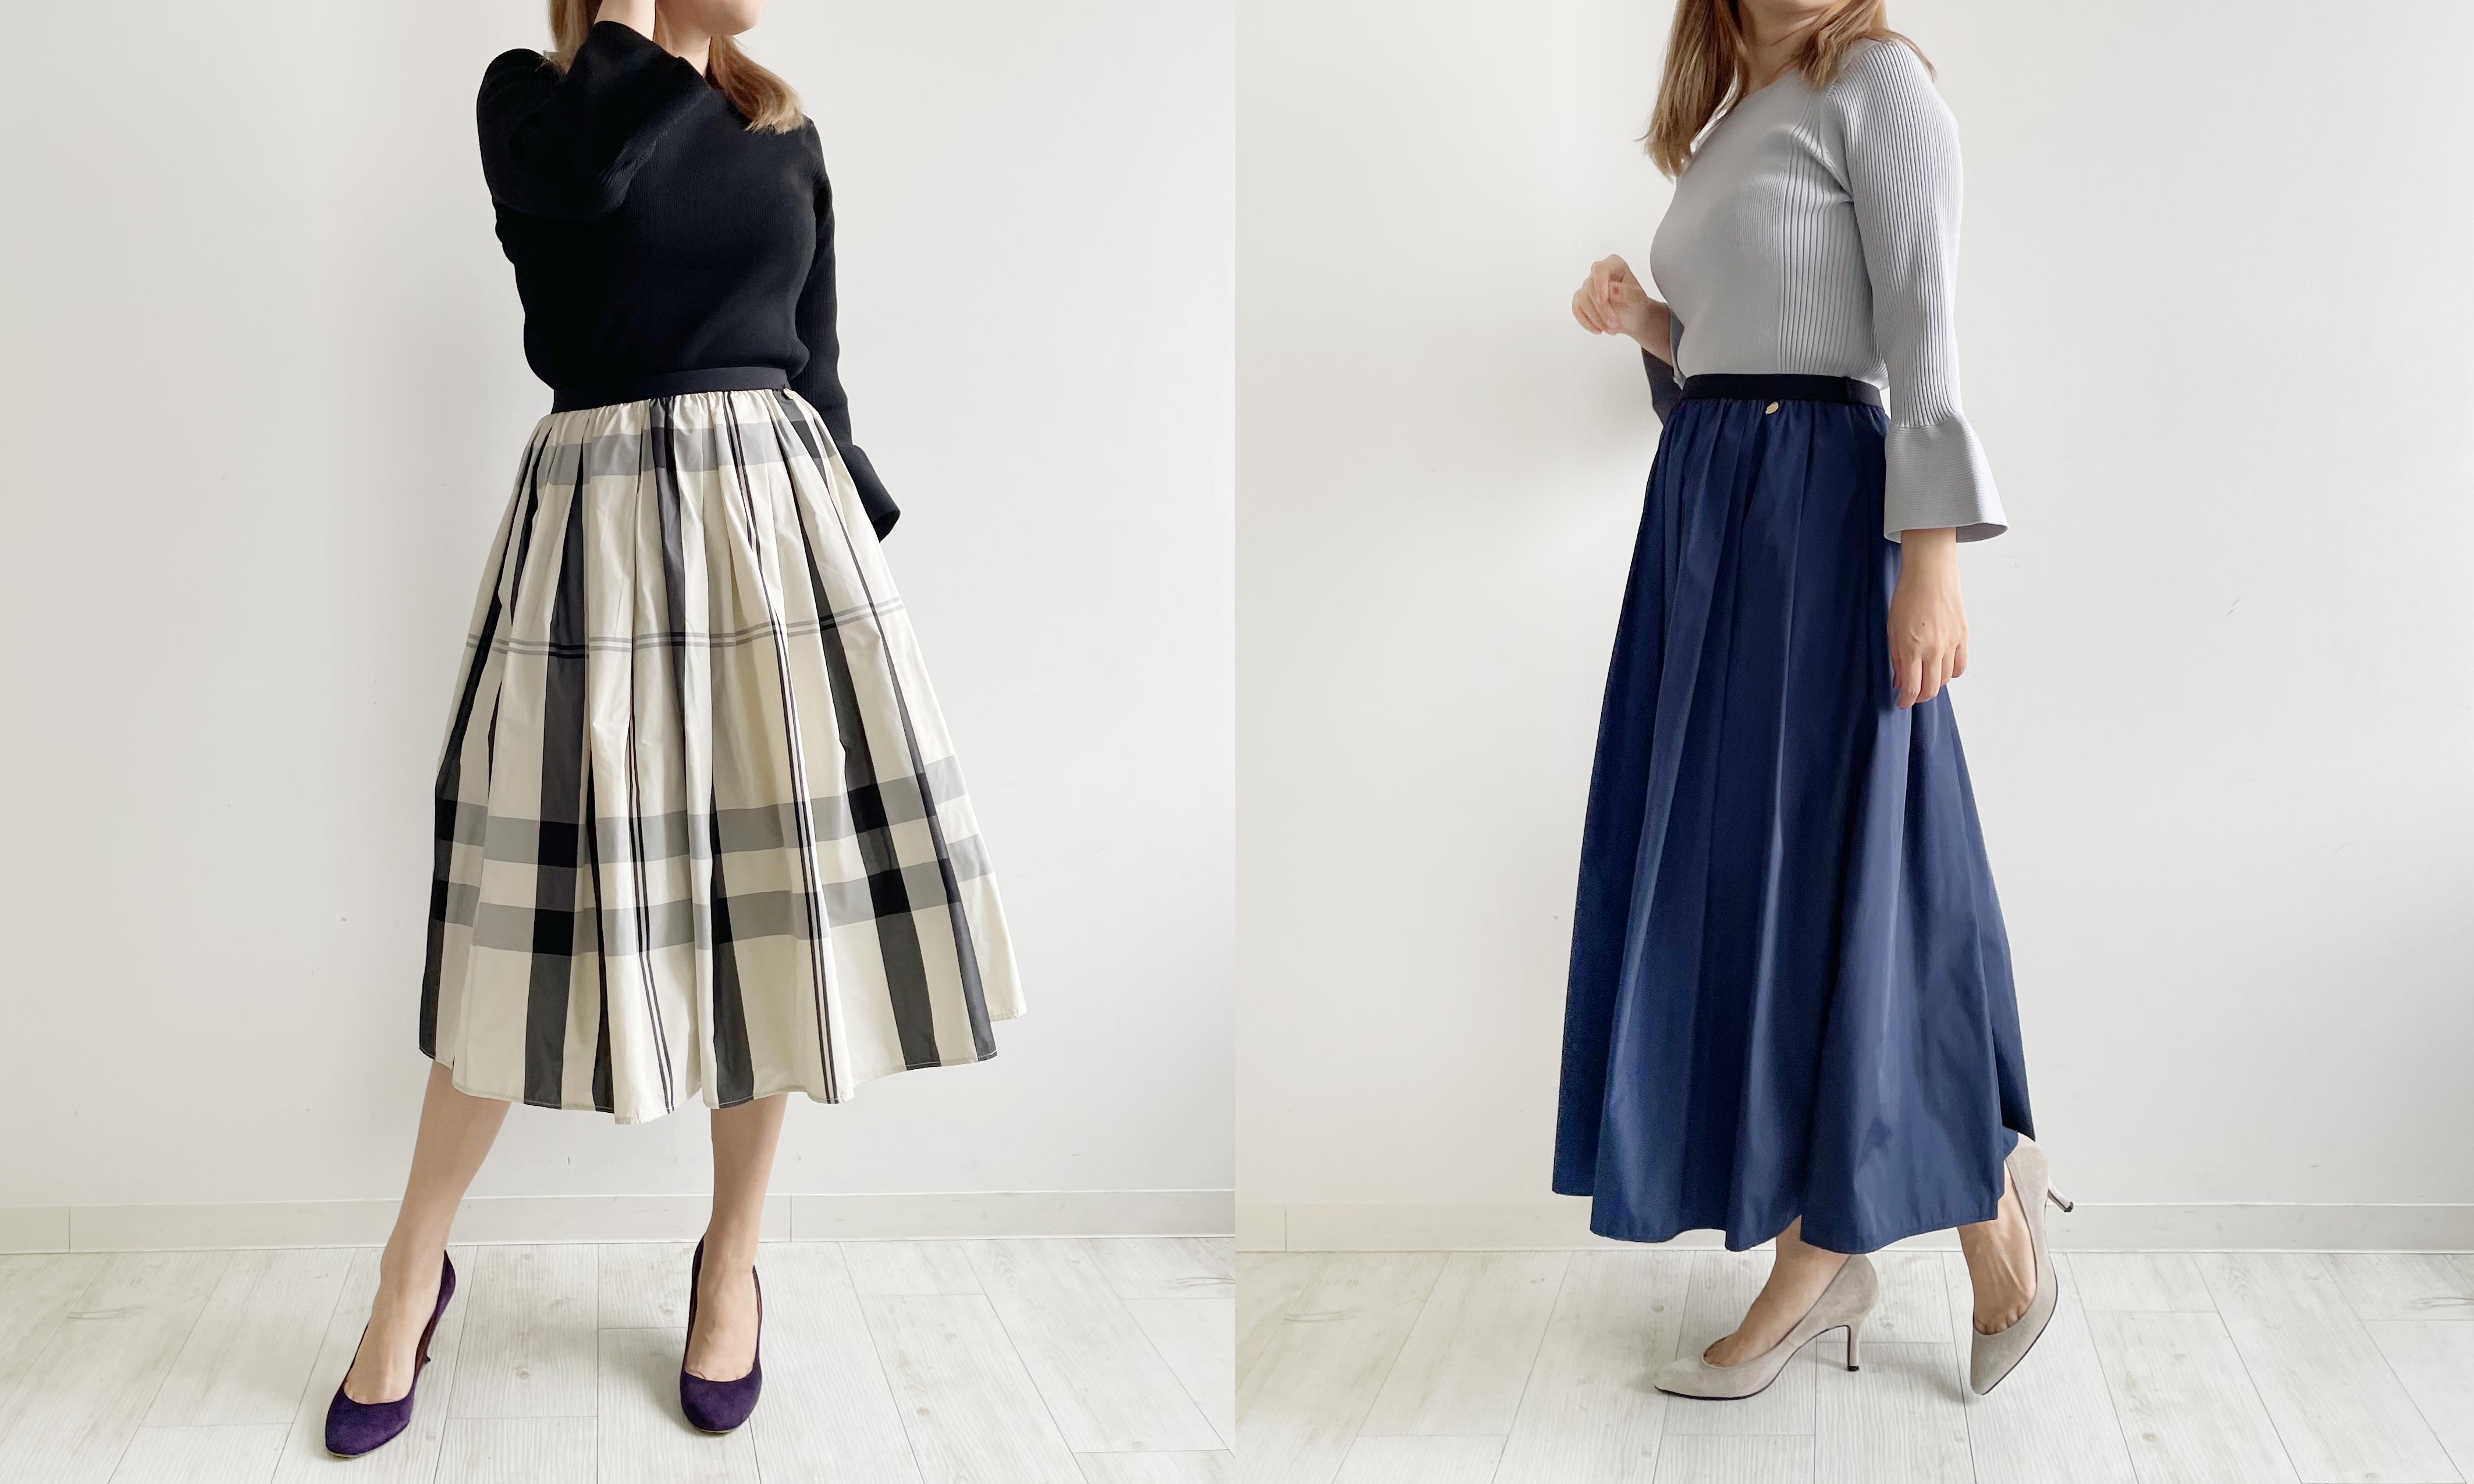 ウエストゴムで楽ちんに穿けるのにふんわりフレアシルエットが大人上品に決まるTRECODEで大人気の神戸・山の手スカート。選べる着丈なので、身長を気にすることなくお好きなスカート丈をお楽しみいただけます